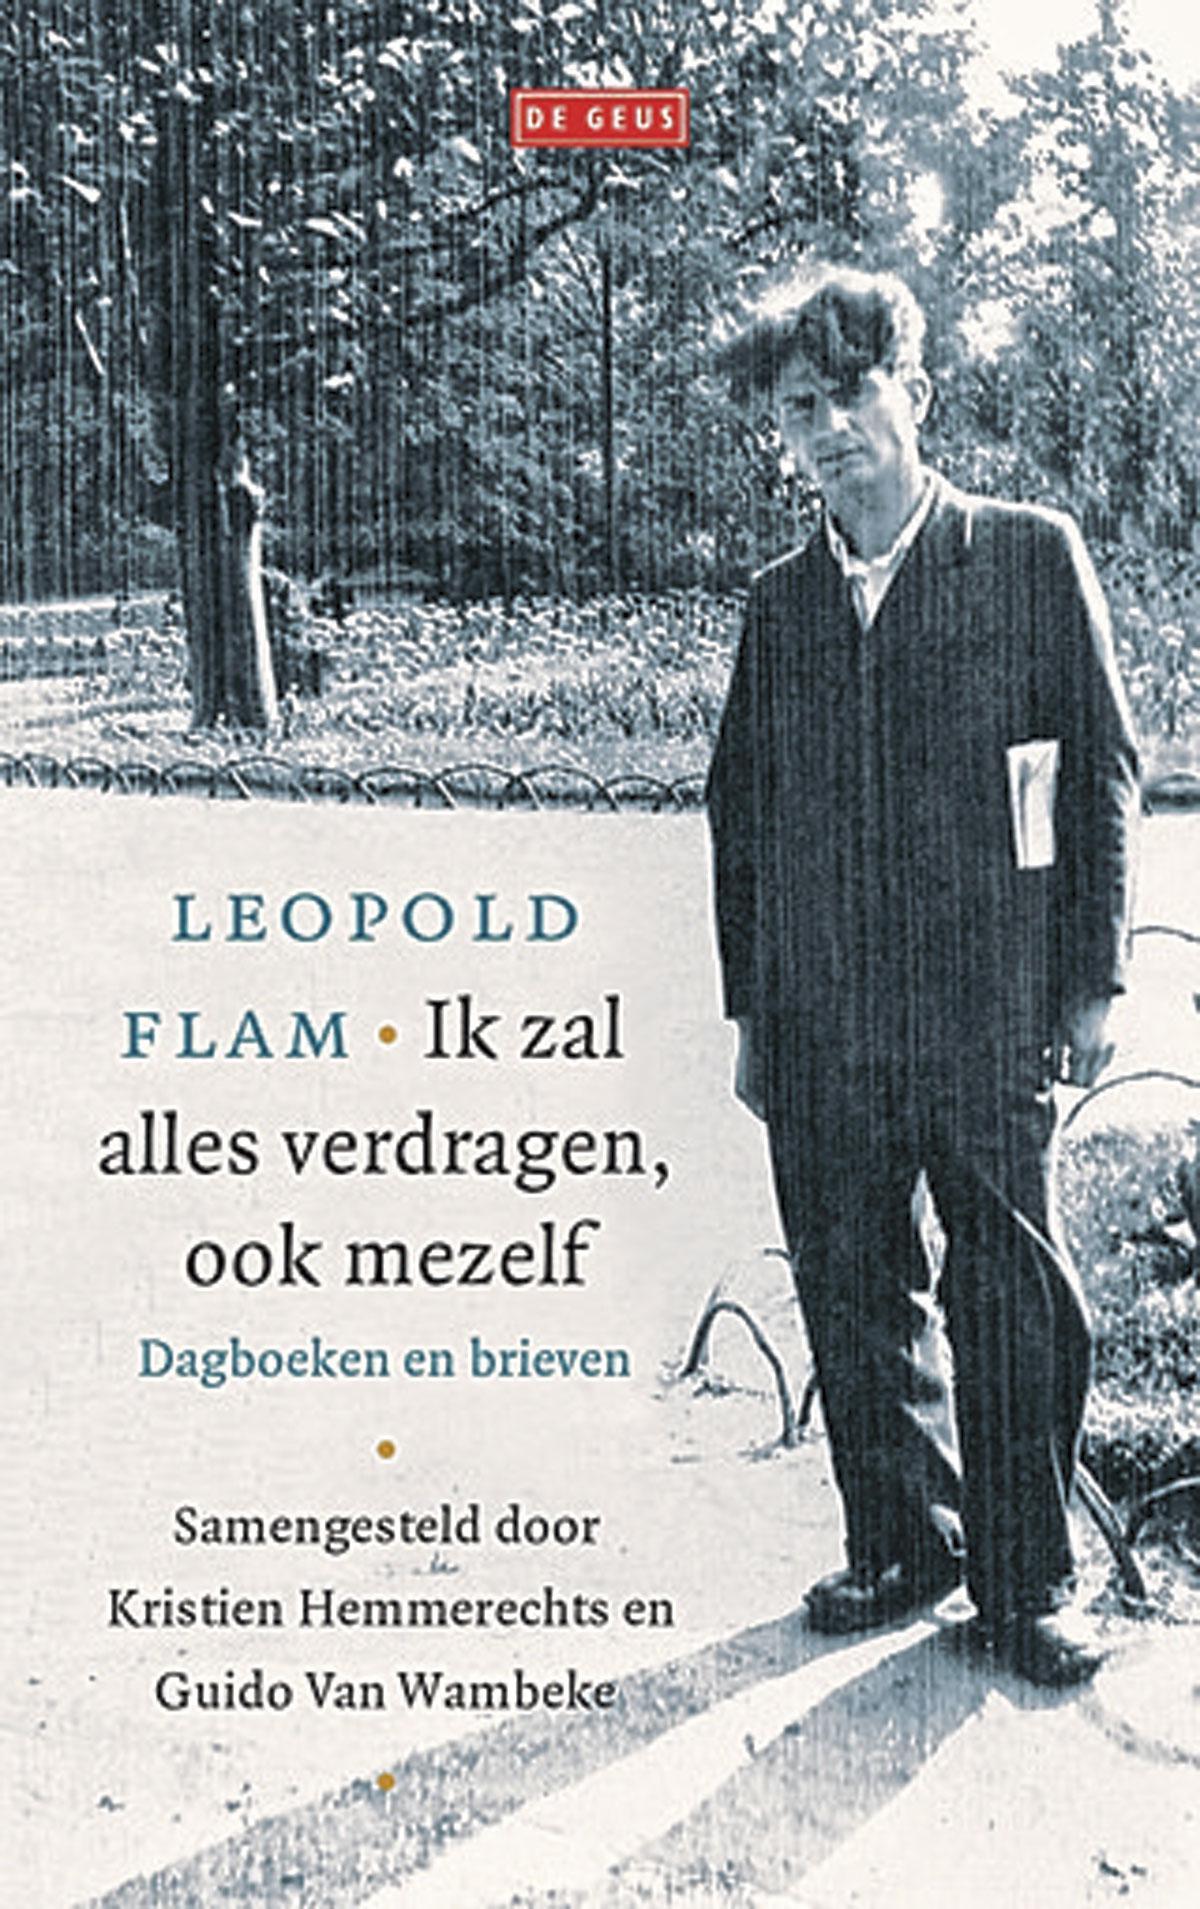 Leopold Flam, Ik zal alles verdragen, ook mezelf, samengesteld door Kristien Hemmerechts en Guido Van Wambeke, De Geus, 464 blz., 29,99 euro.